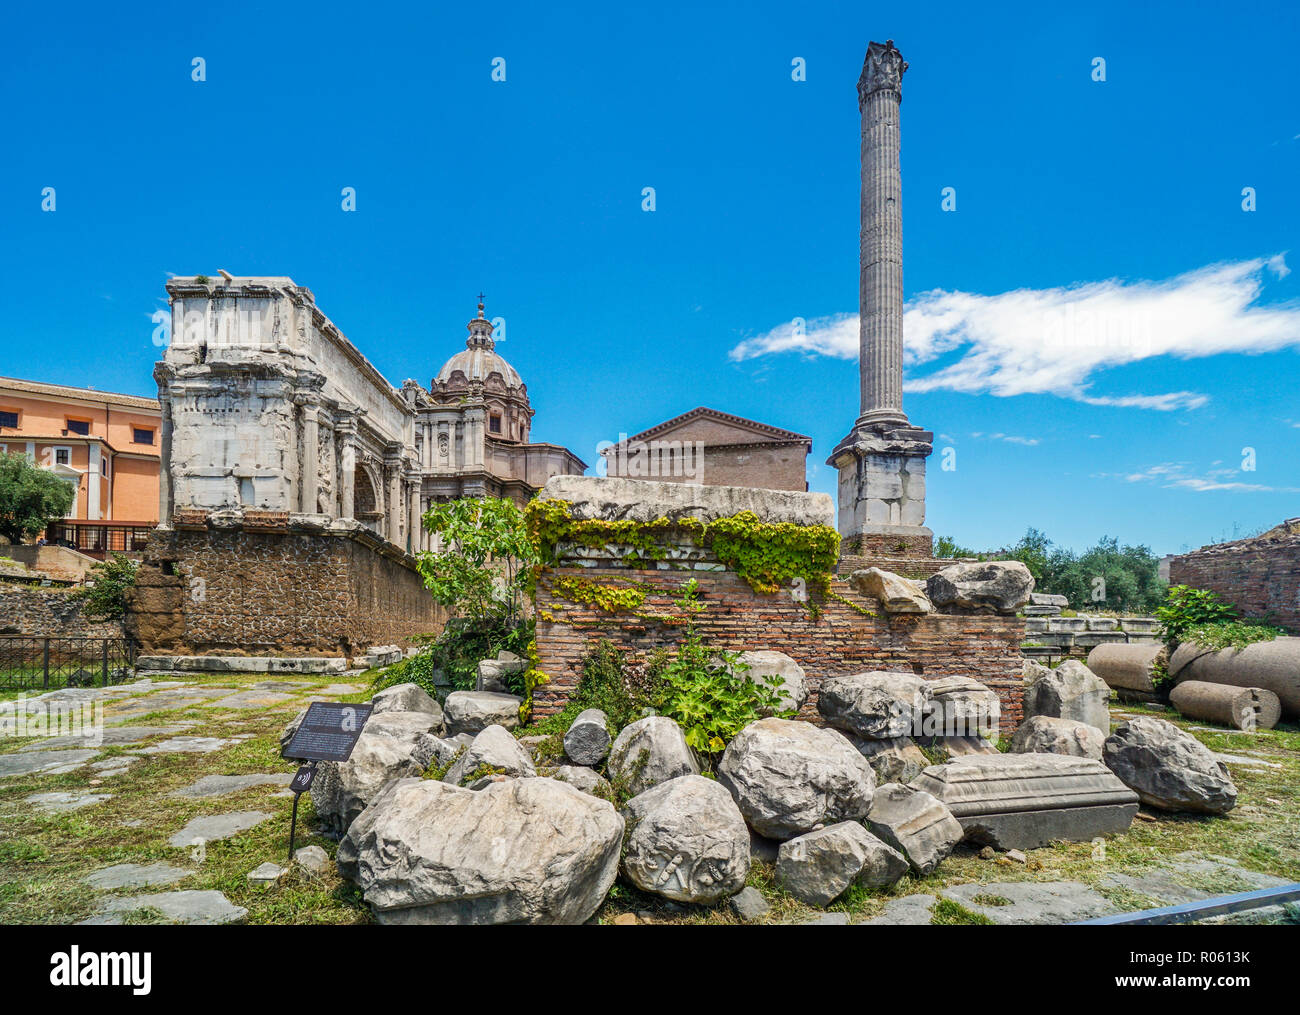 Zentrale Platz des Forum Romanum, die antike Stadt von Rom mit Blick auf die Spalte des Phokas und der Triumphbogen des Septimus Severus, Rom, Italien Stockfoto